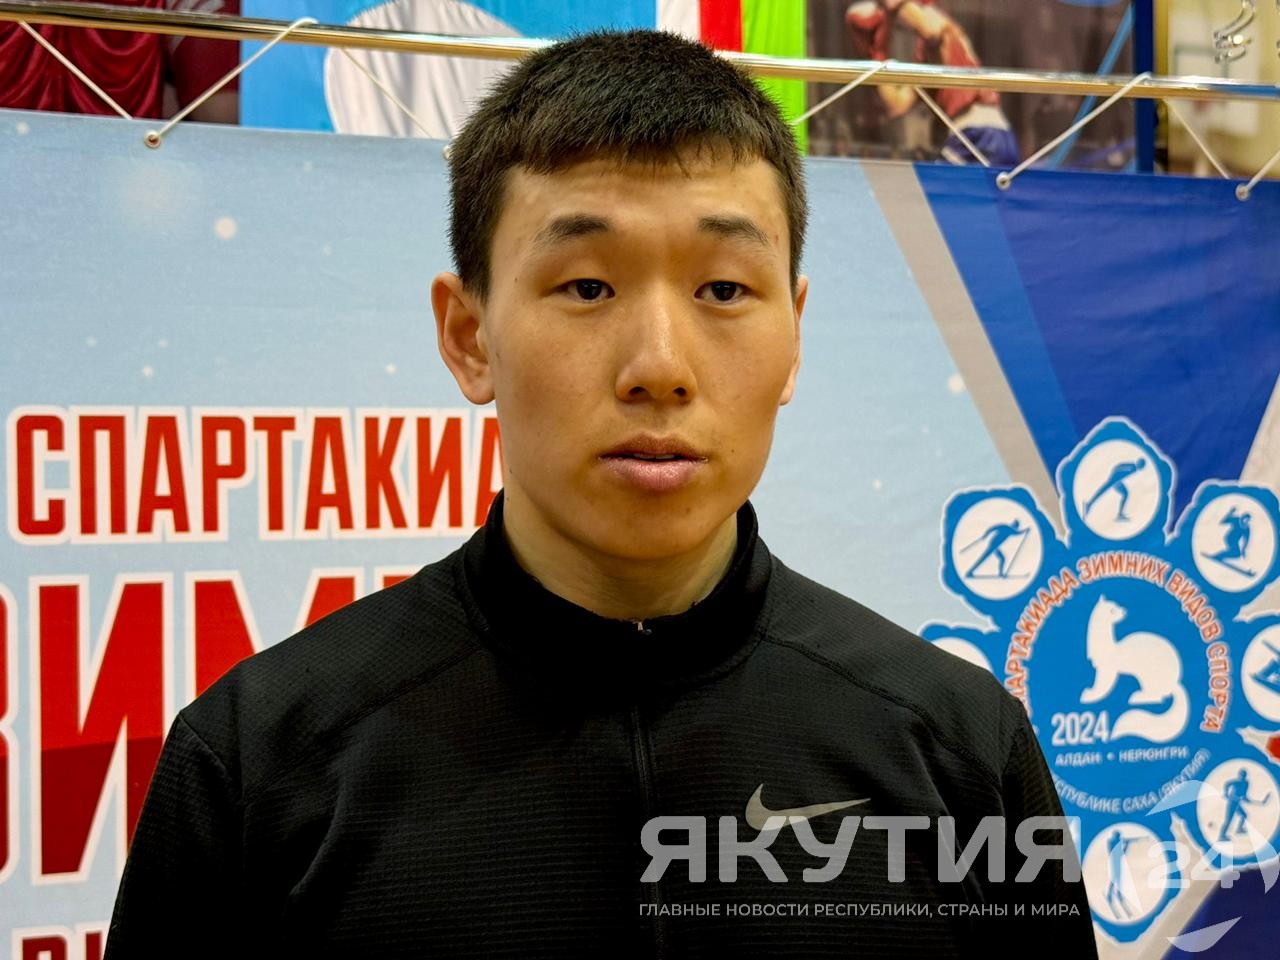 Егор Терентьев установил новый рекорд спартакиады зимних видов спорта Якутии по тройному прыжку